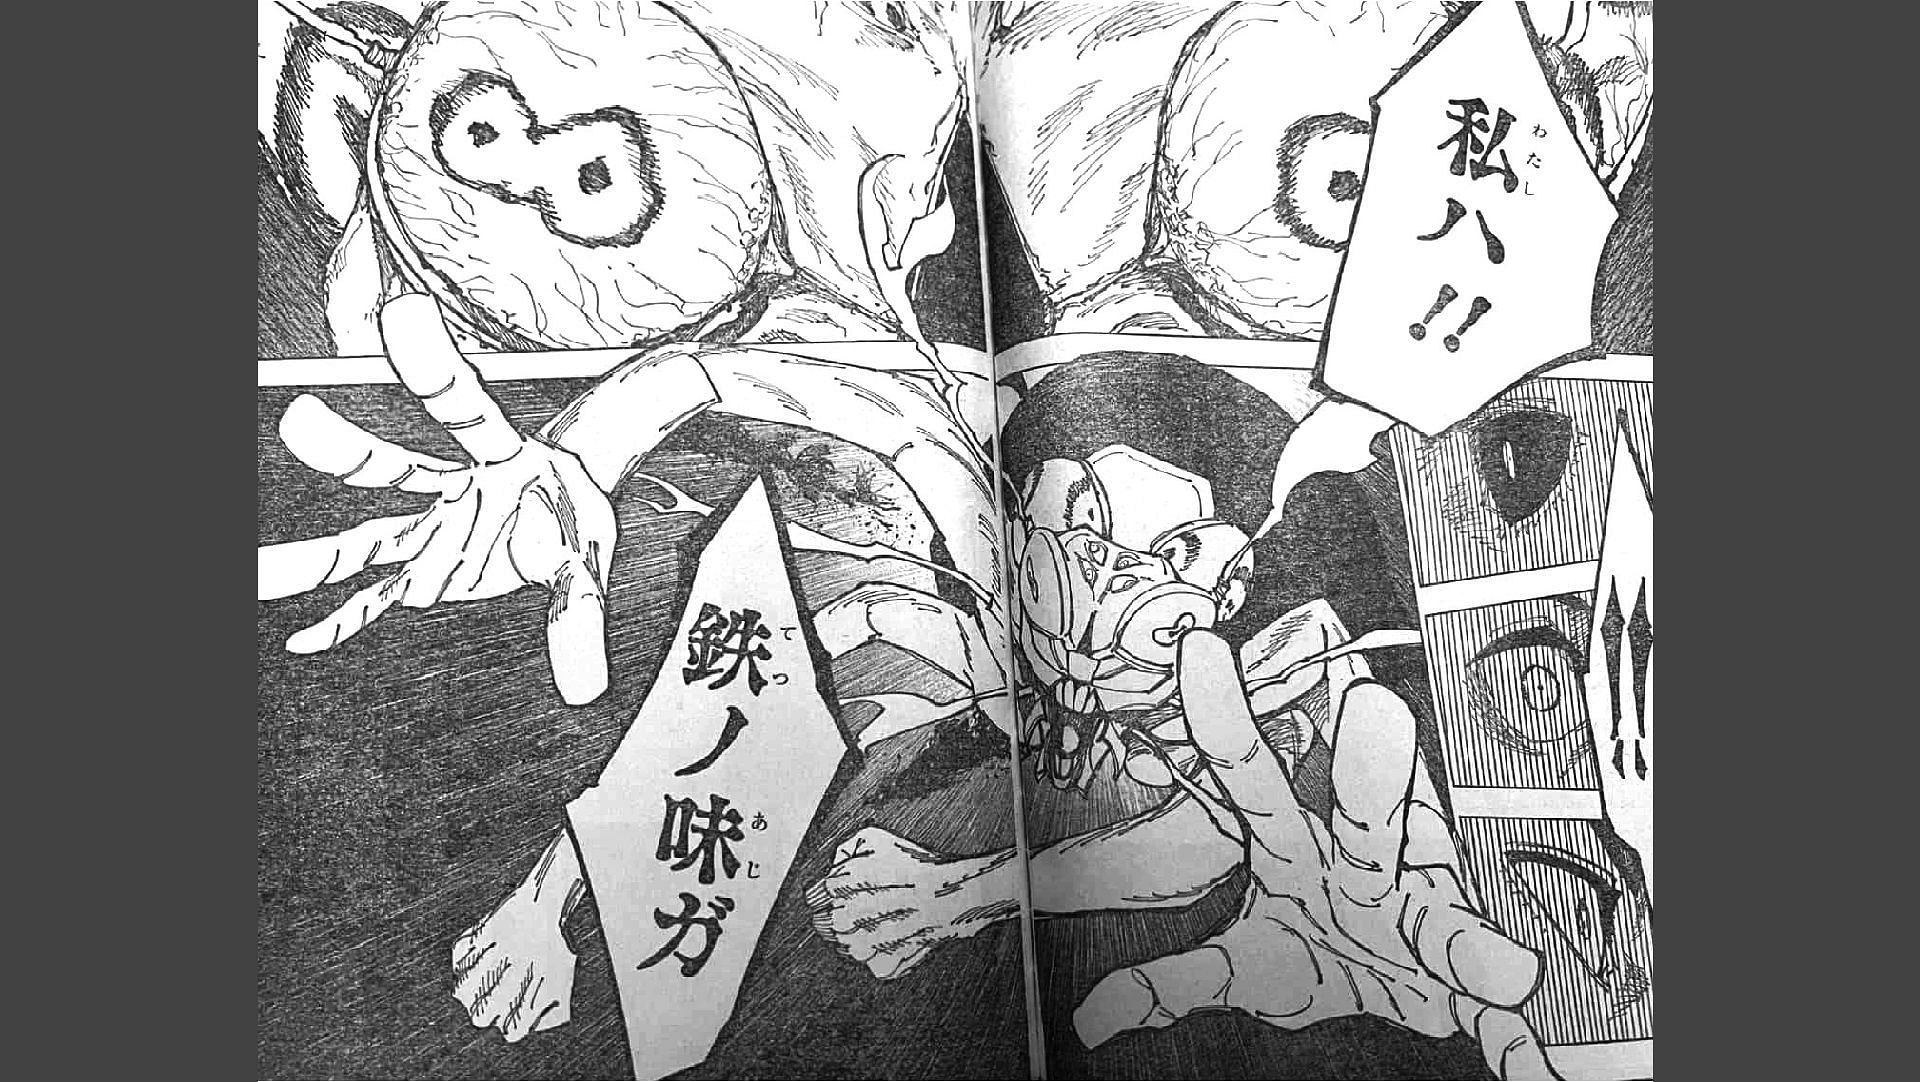 Jujutsu Kaisen chapter 179 raw scans (Image via Shueisha)